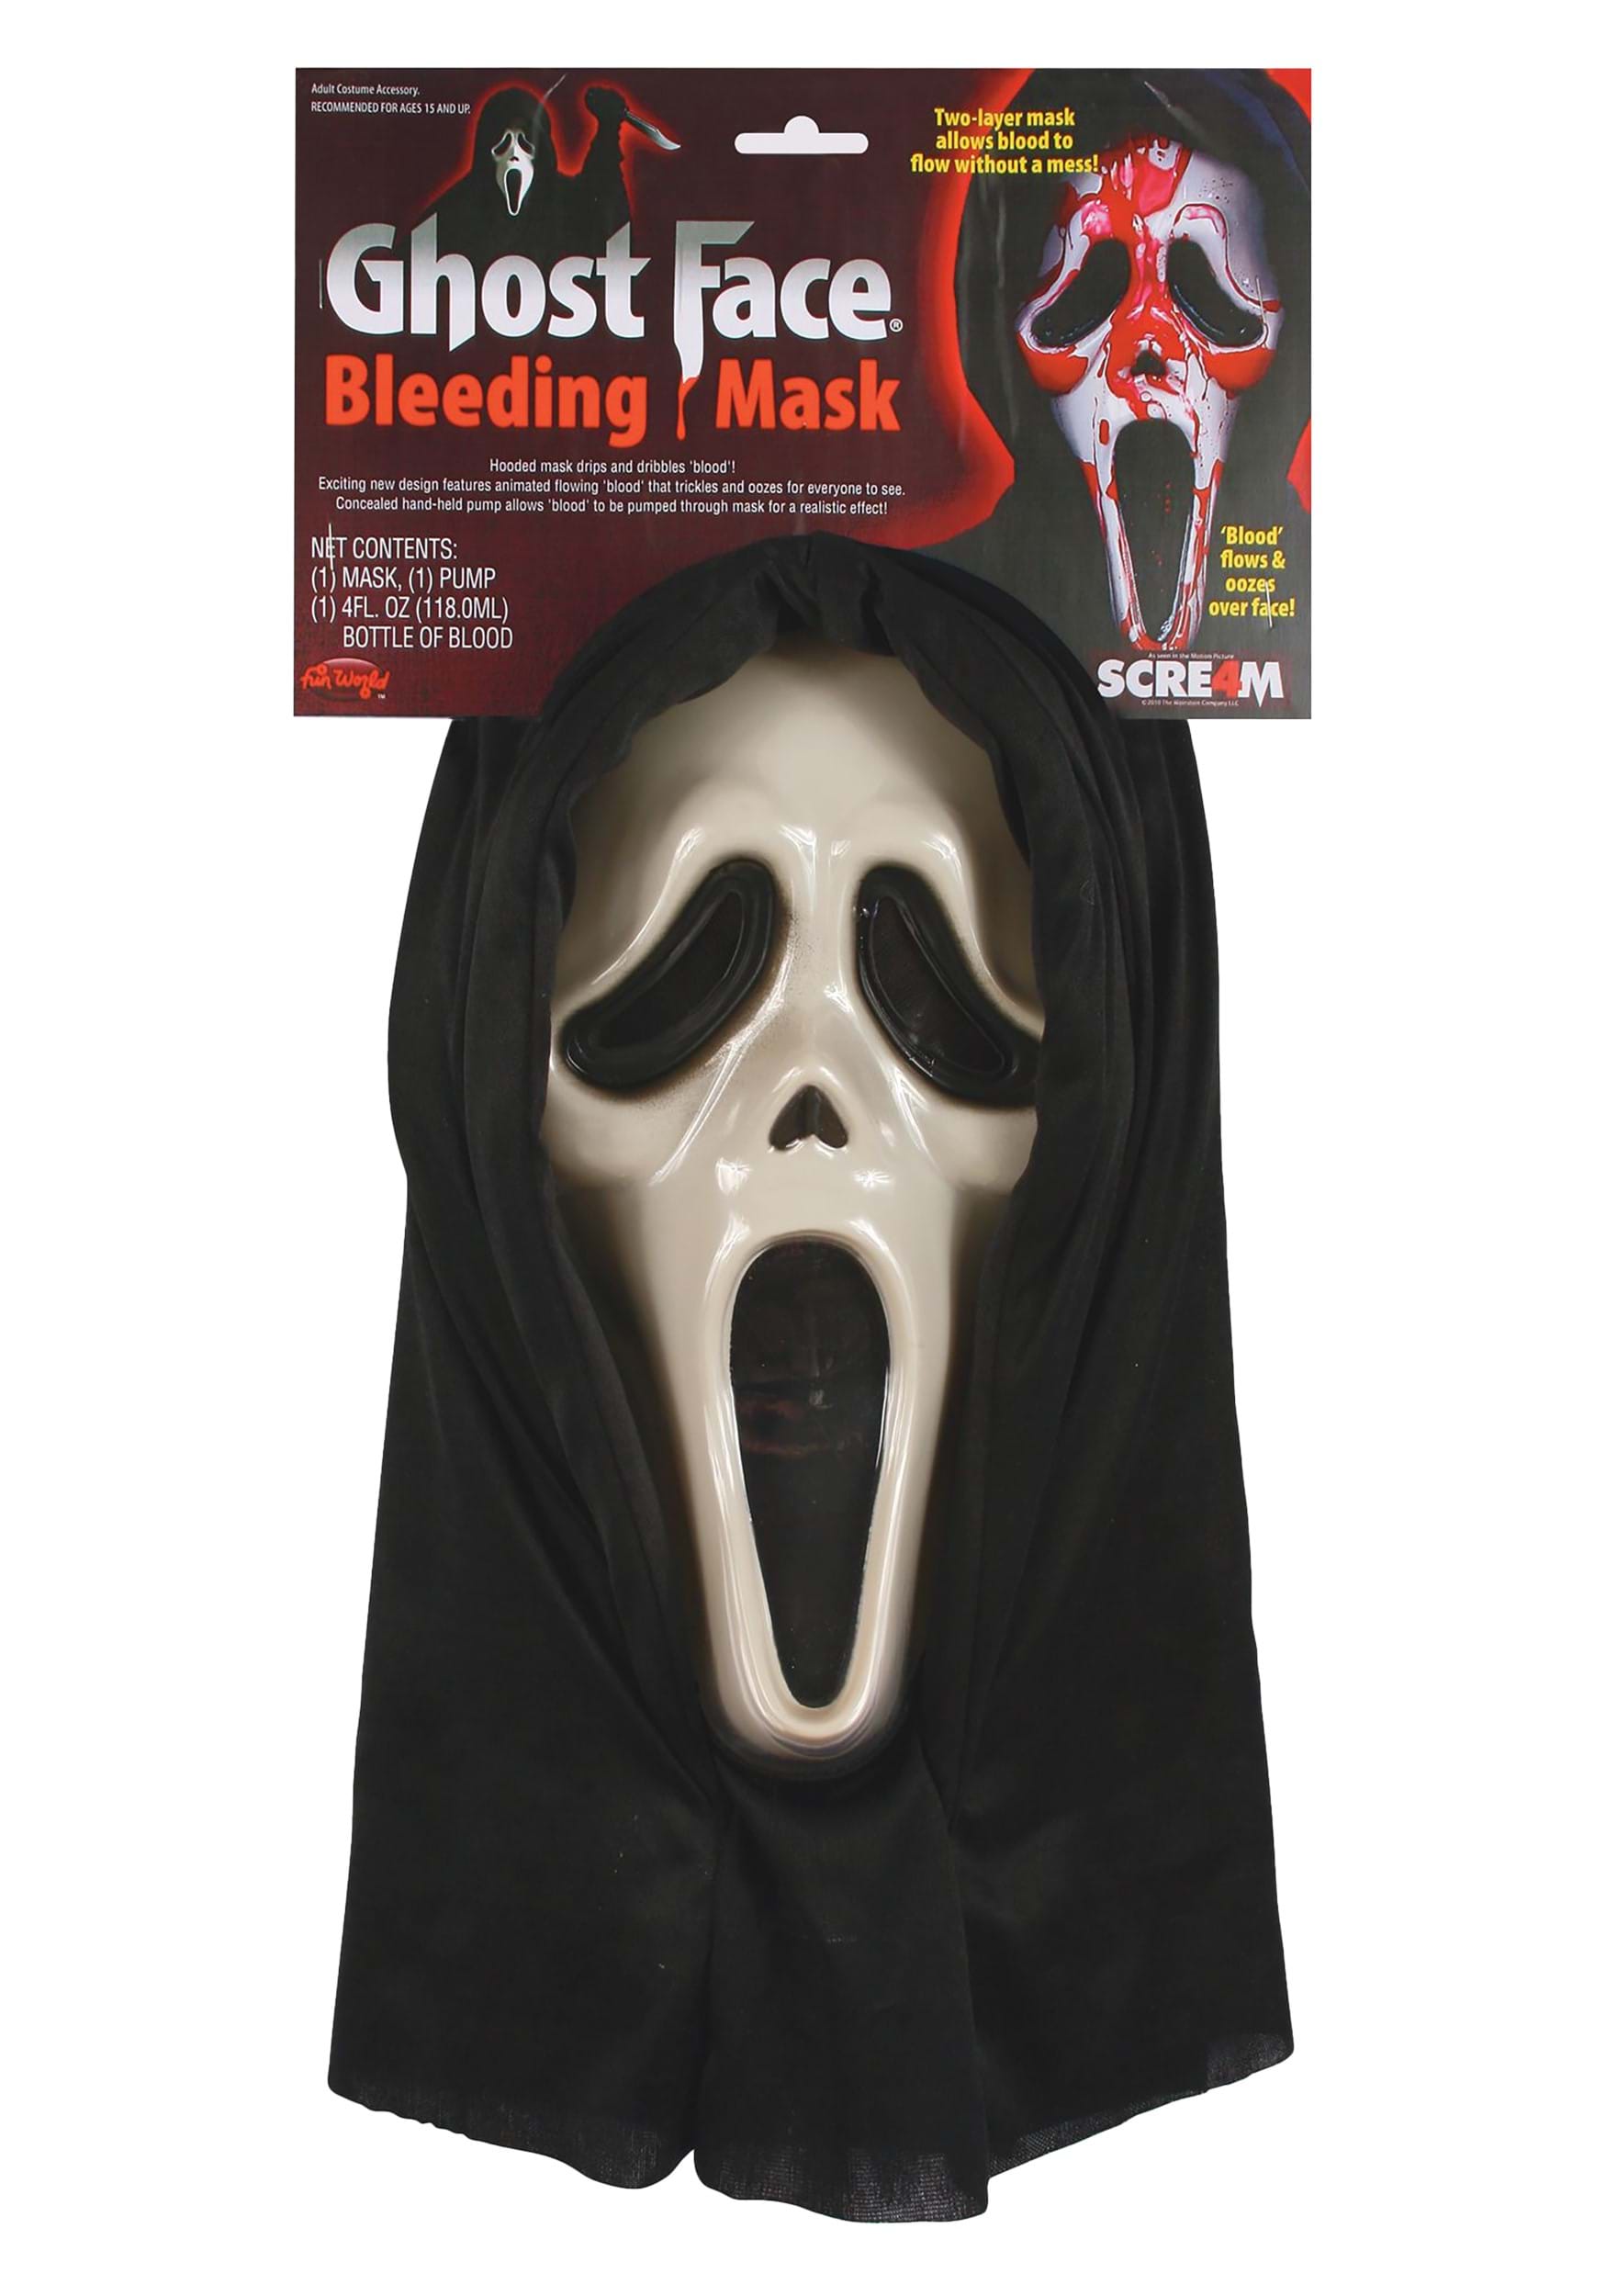 Adult Ghostface Costume Plus Size - Scream